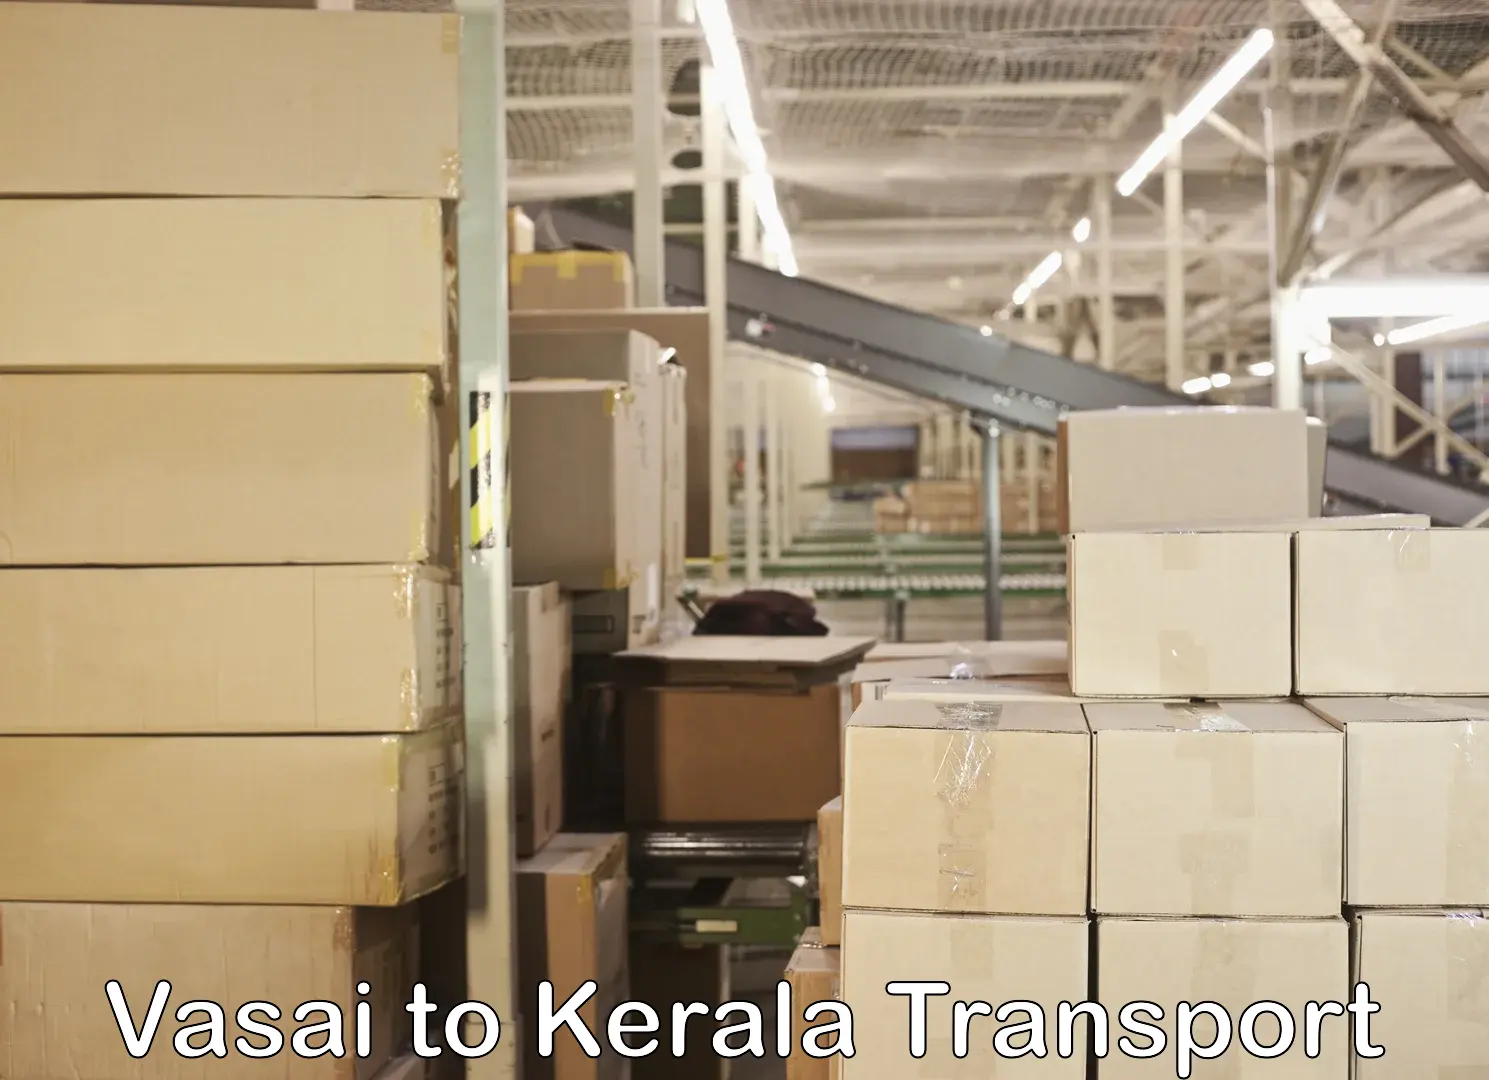 Transport in sharing Vasai to Mundakayam